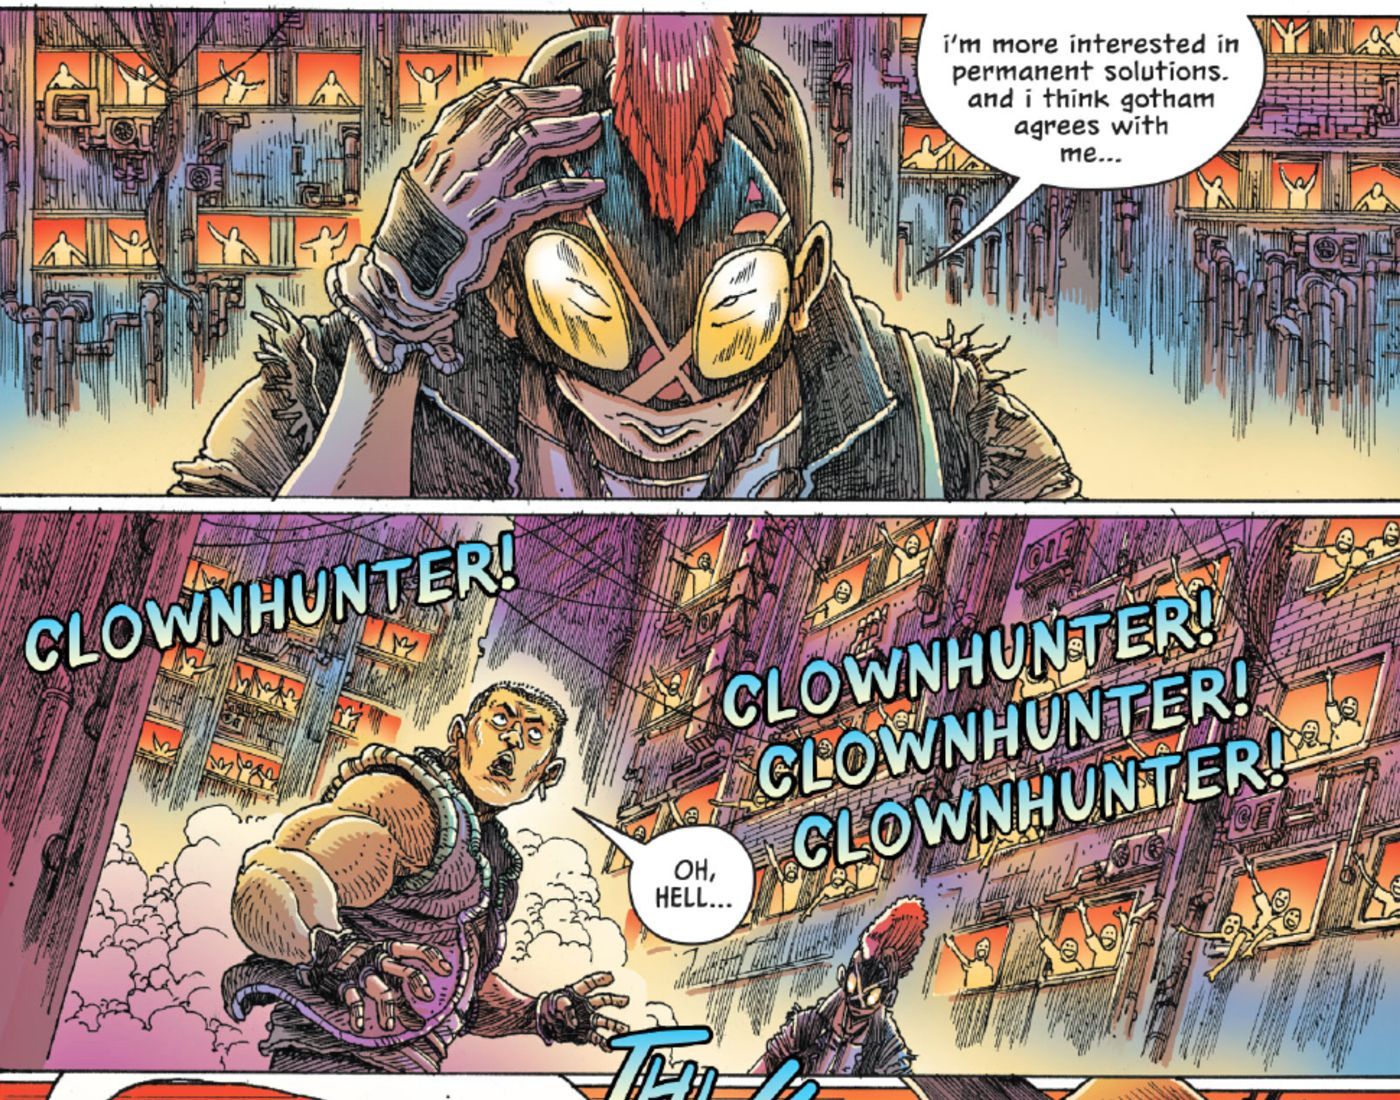 Joker War Clownhunter popular